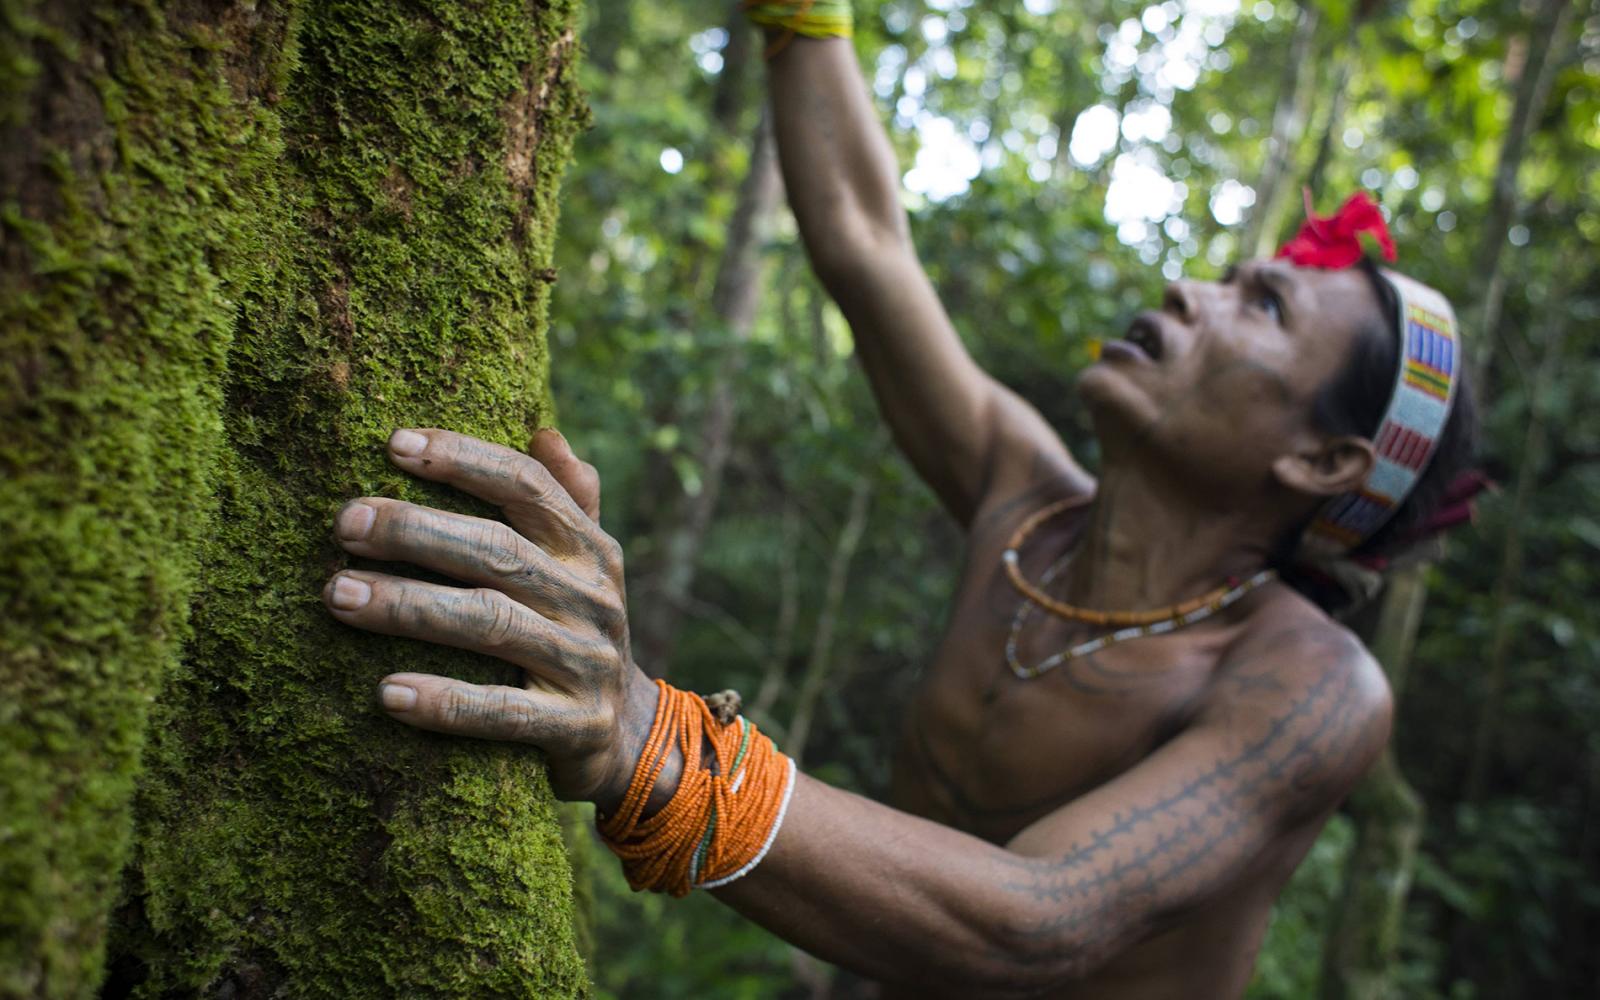 Amantari, 39 ans, chamane, s'excuse auprès d'un arbre de la famille Hopea pour lui annoncer qu'il va avoir besoin de son bois pour construire une maison et qu'il va donc abattre prochainement, Pulau Siberut, Sumatra, Indonésie